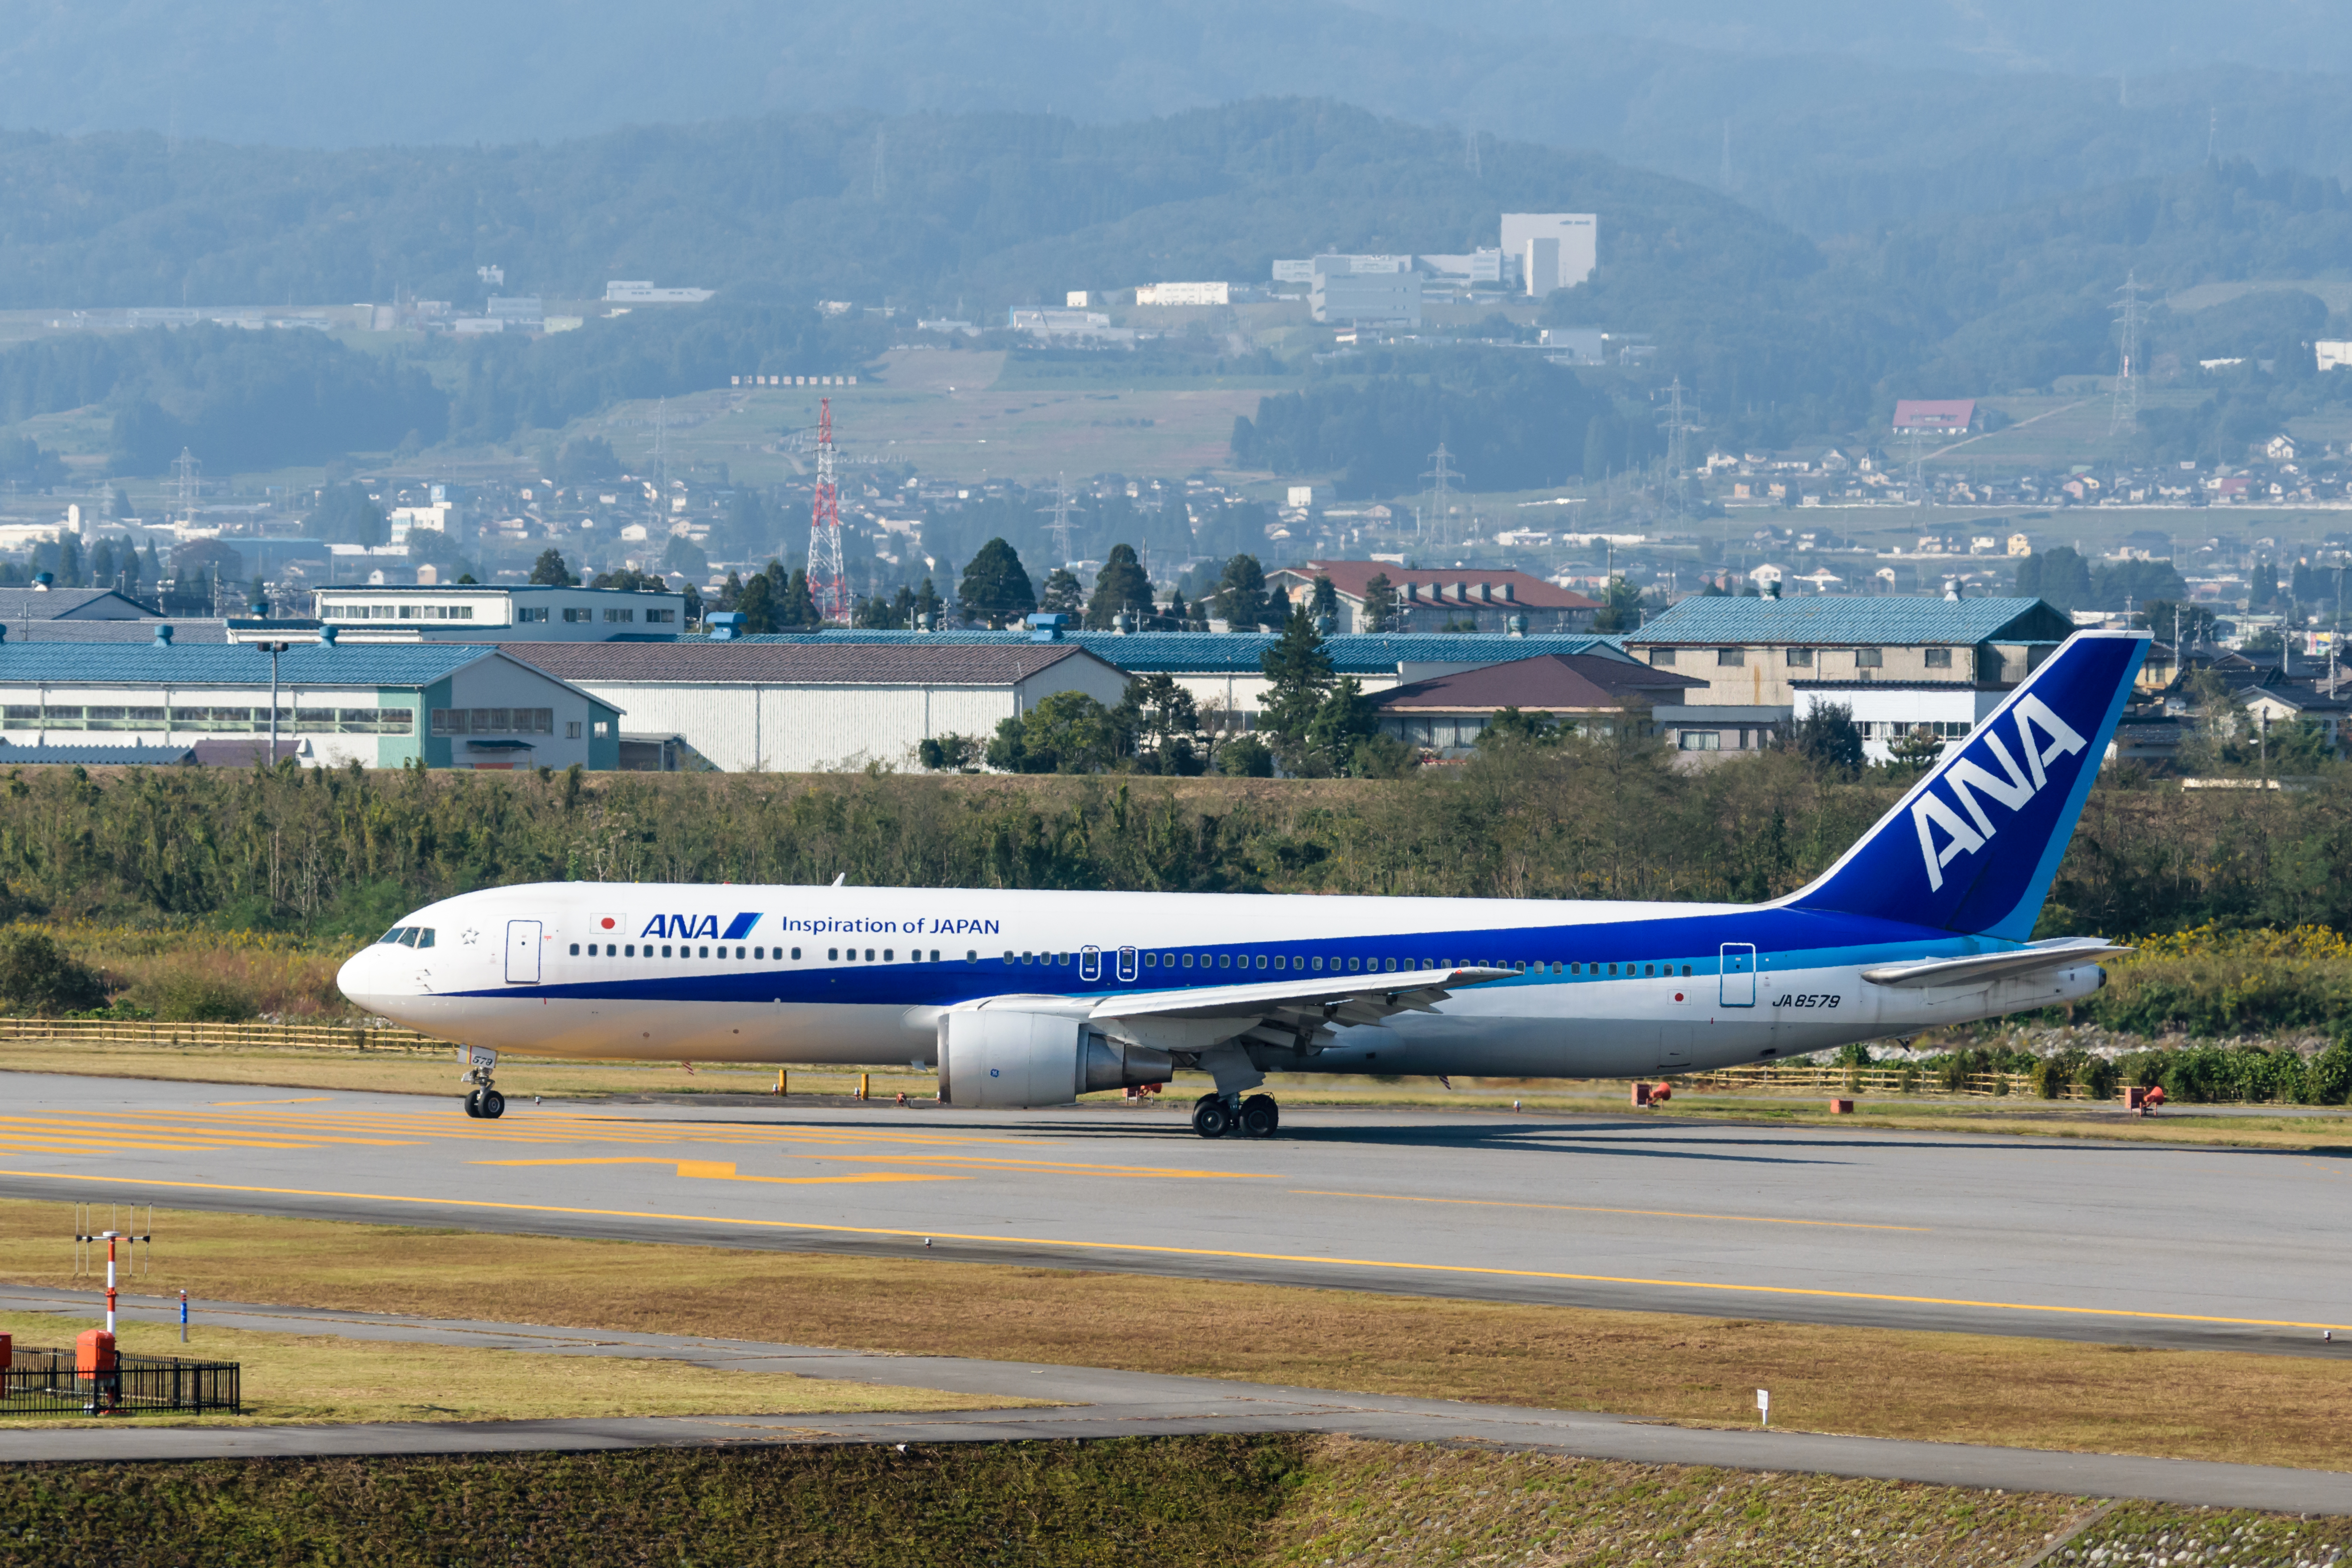 Boeing 767-381 (ja8579) photo